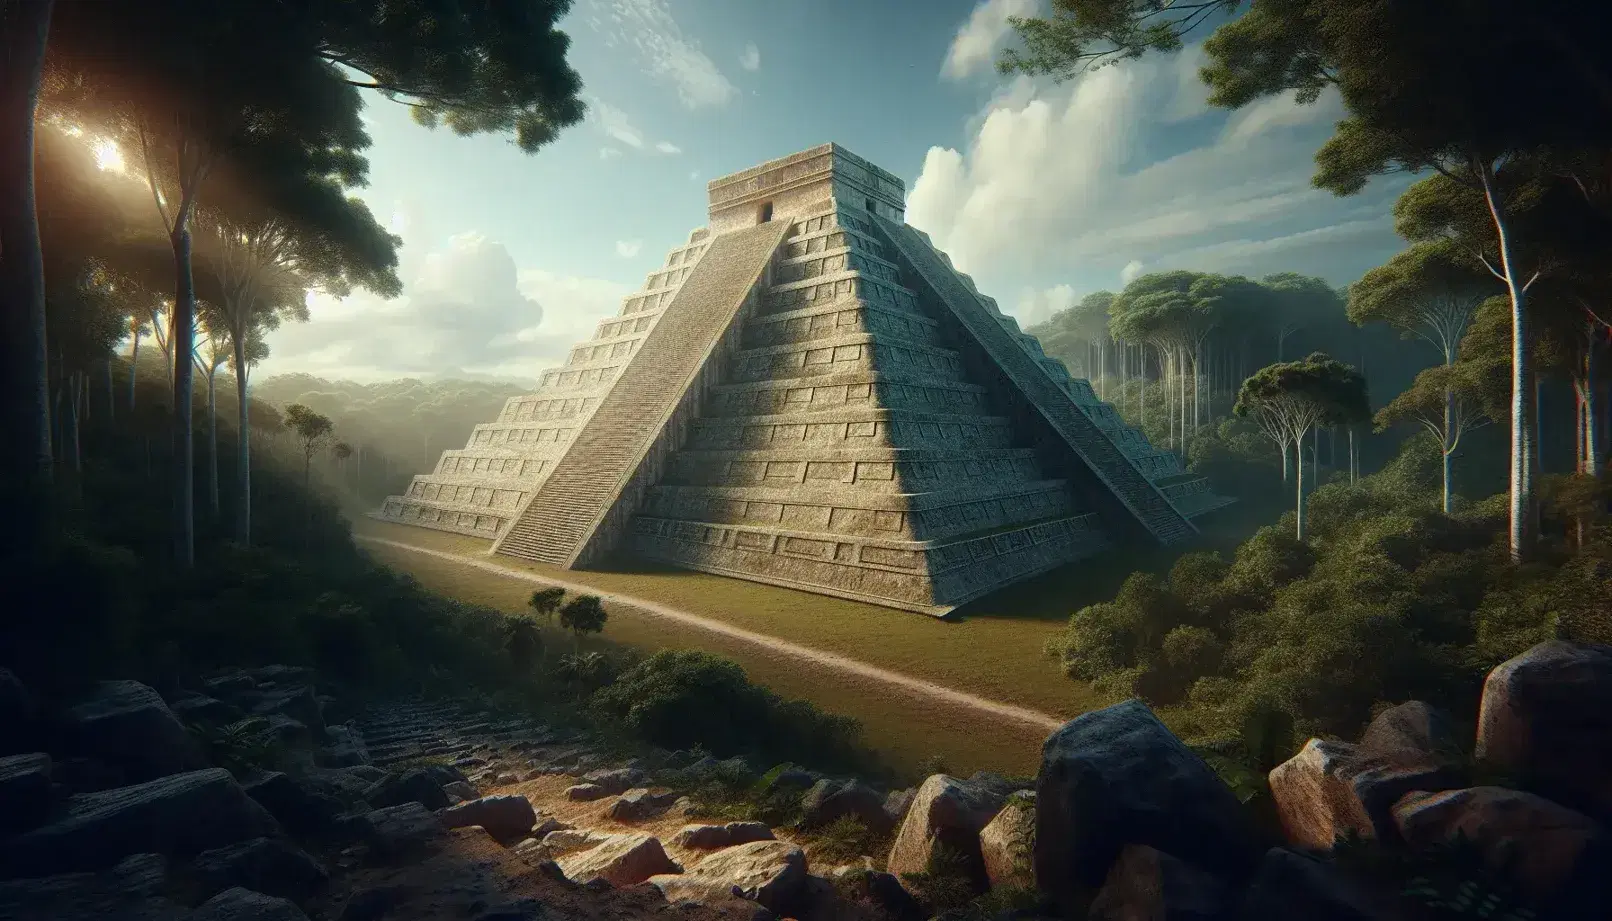 Piramide Maya in pietra calcarea circondata da giungla con scalinata ripida e tempio in cima sotto cielo azzurro nuvoloso.